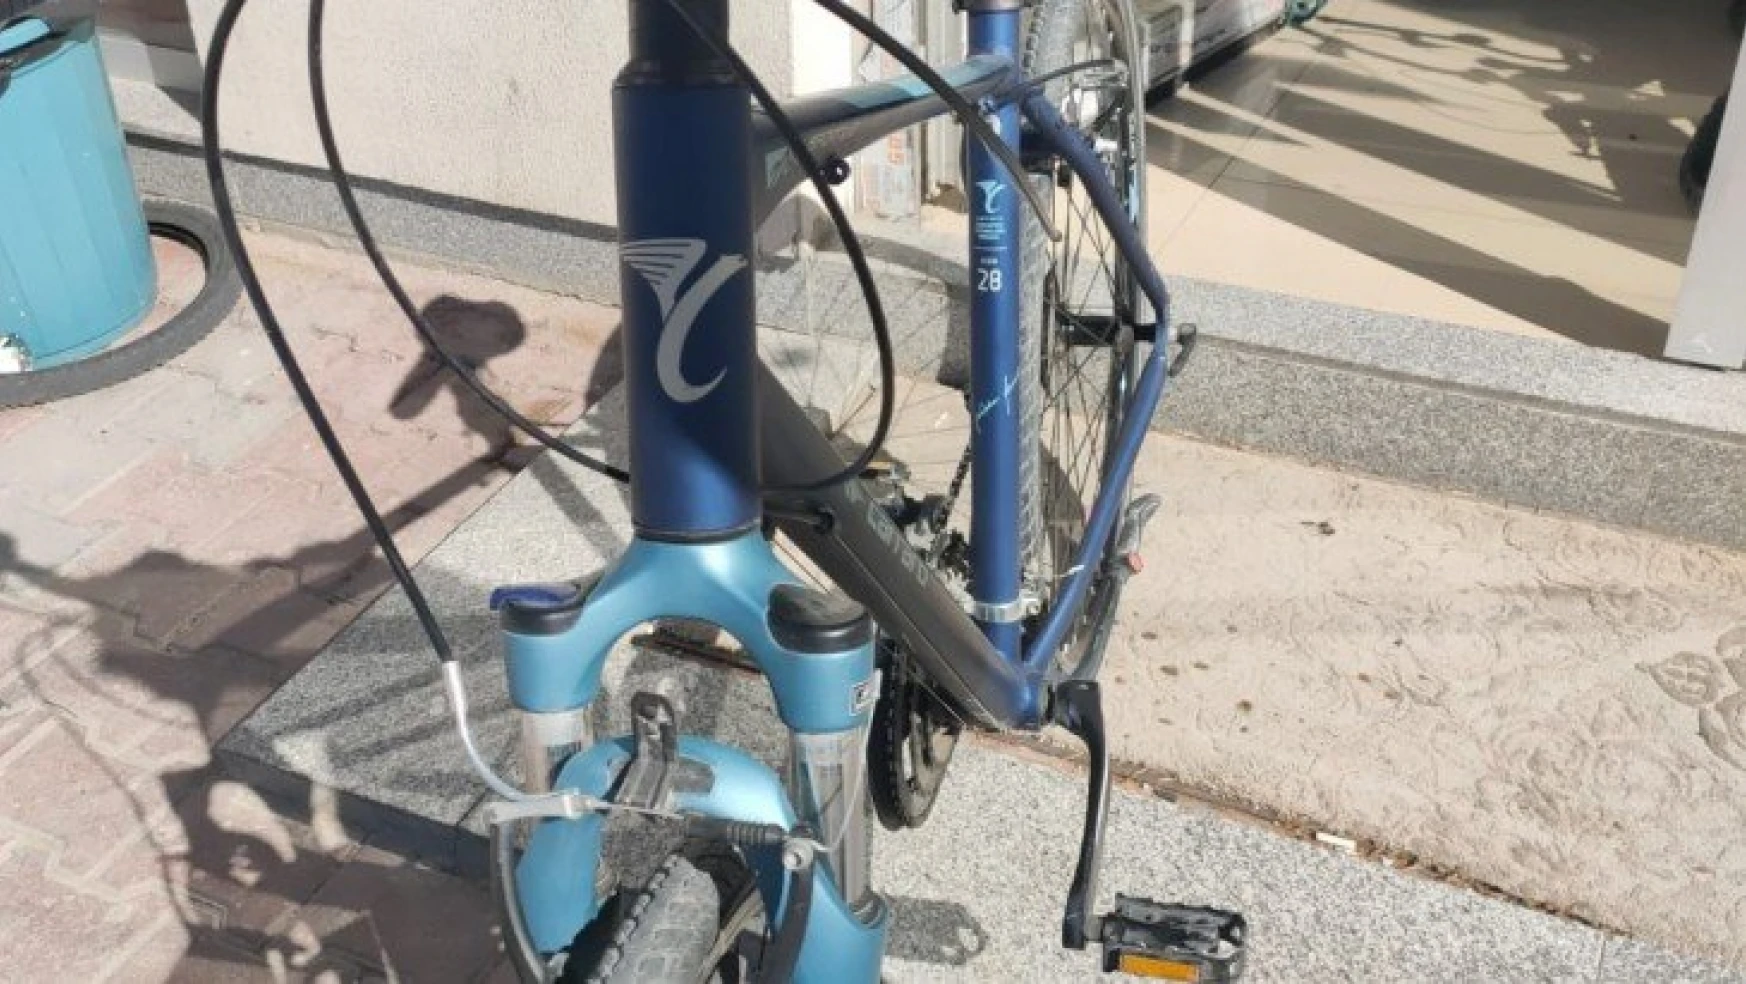 Çaldığı bisikleti internette satışa çıkarınca yakalandı